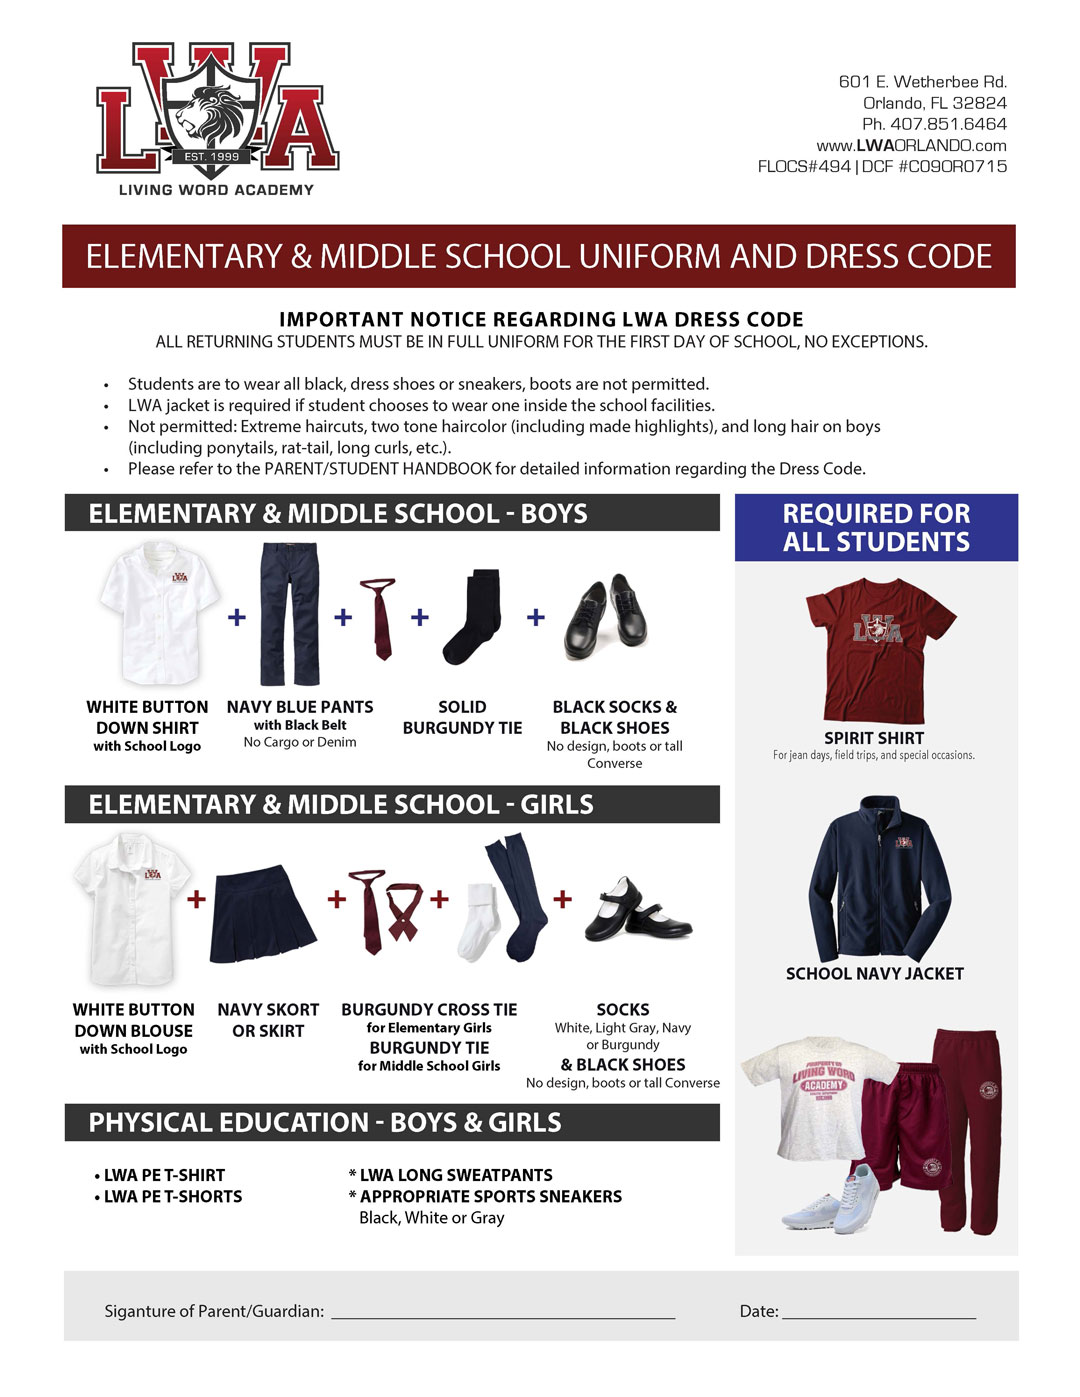 siegel middle school dress code